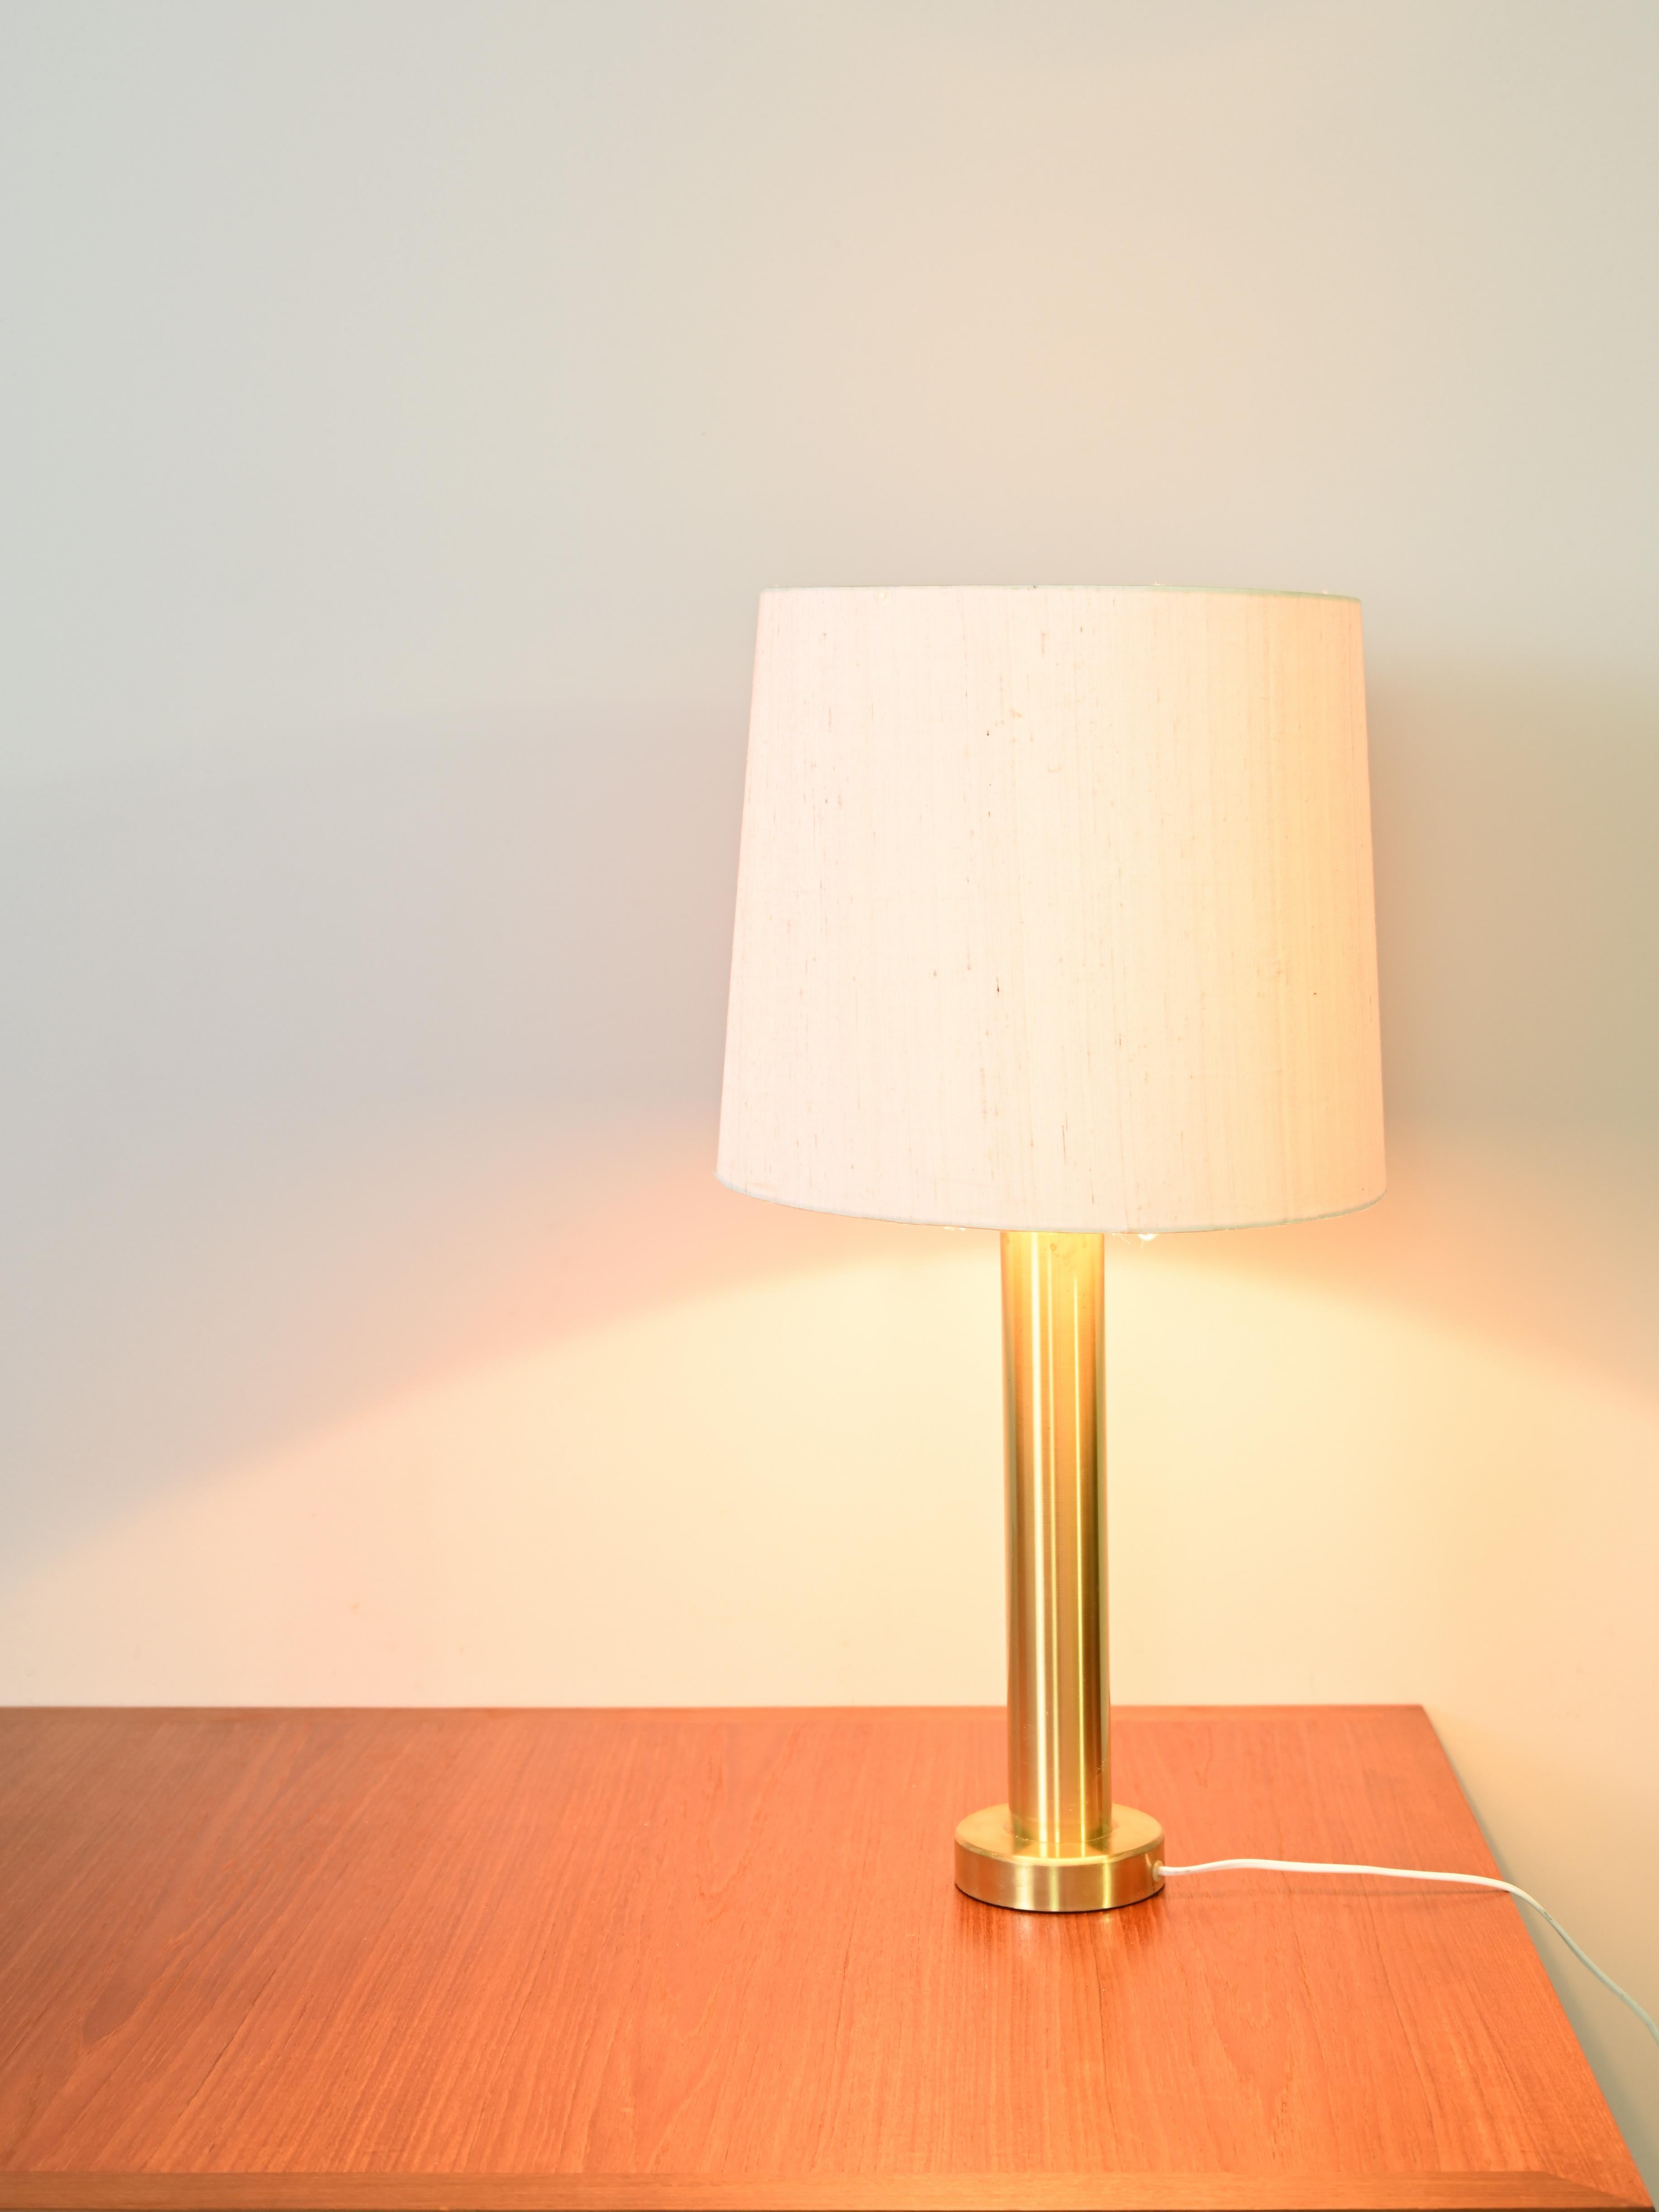 Élégante lampe scandinave originale des années 1960.
 
Une pièce design d'une beauté intemporelle. Élégante lampe scandinave vintage des années 1960.
 
Une pièce de design d'une beauté intemporelle. 
Composé d'une base en métal doré et d'un